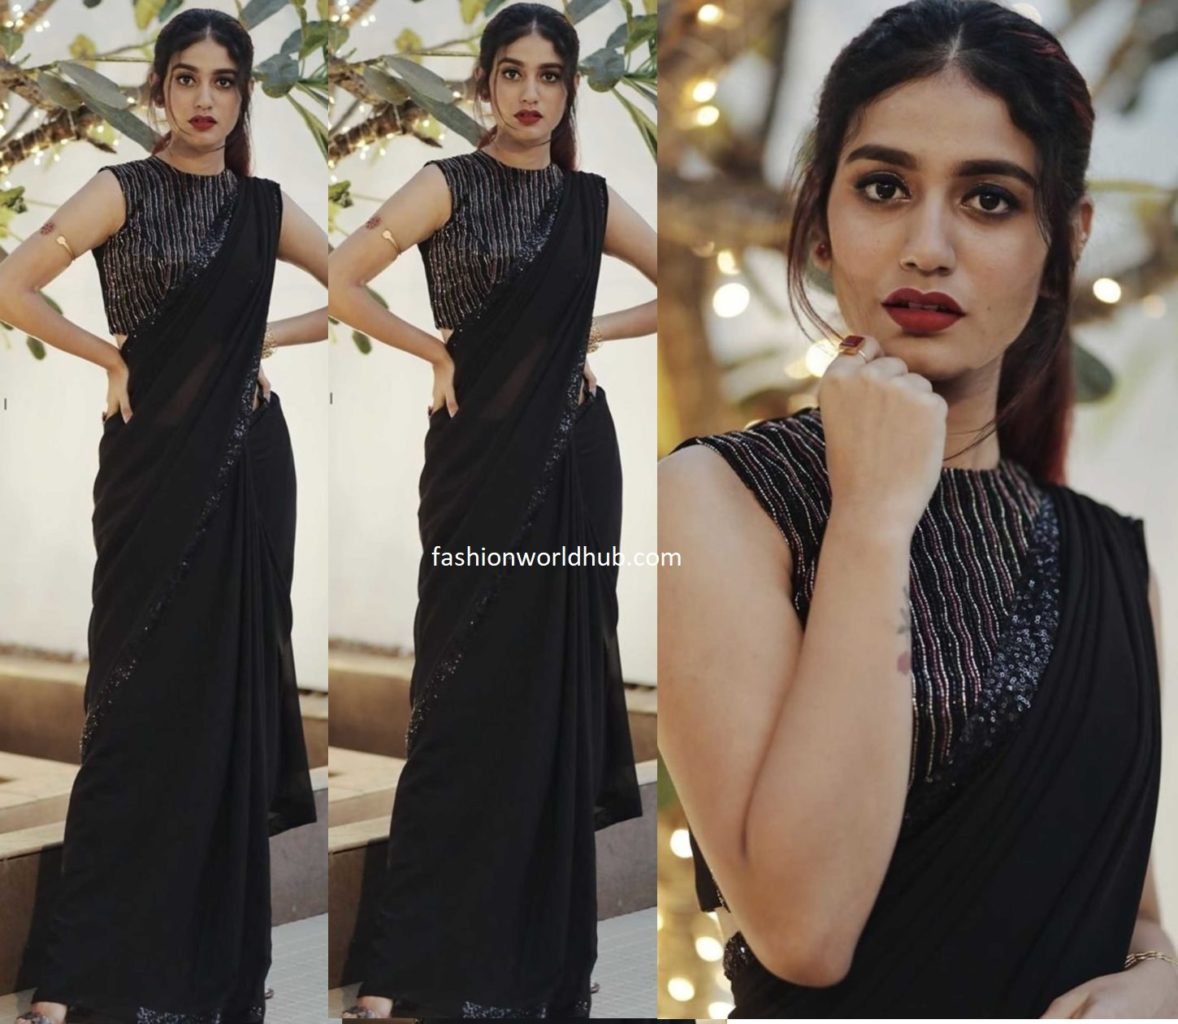 Priya Prakash Varrier in a black saree | Fashionworldhub